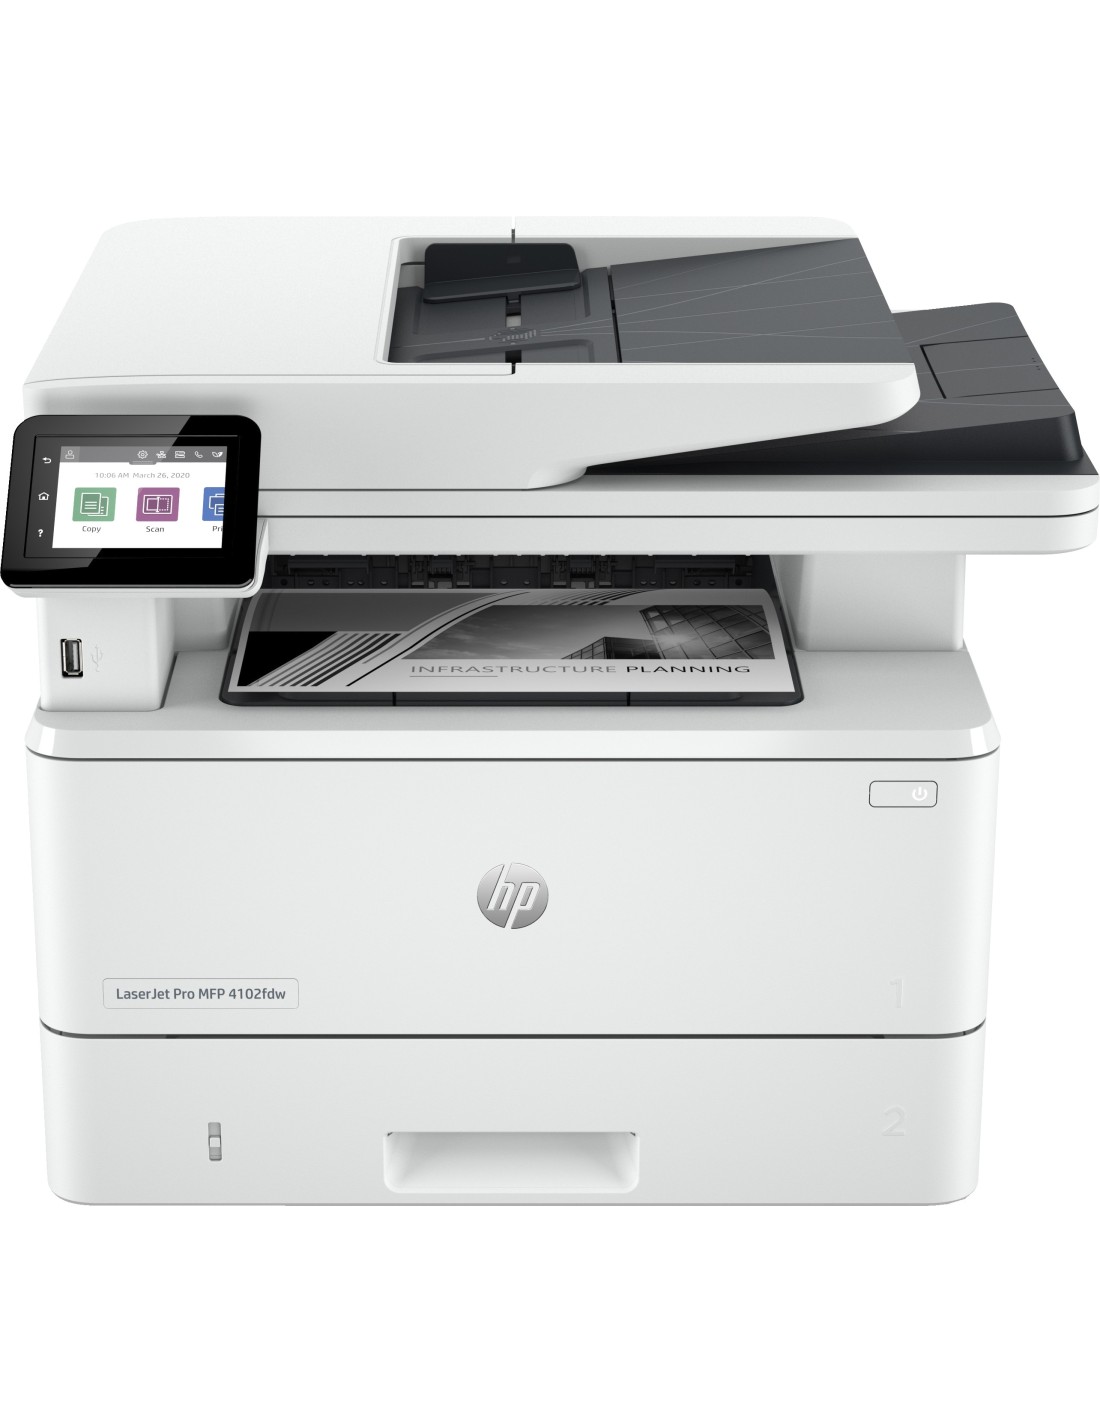 HP LaserJet Pro Impresora multifunción 4102fdw, Blanco y negro, Impresora  para Pequeñas y medianas empresas, Imprima, copie